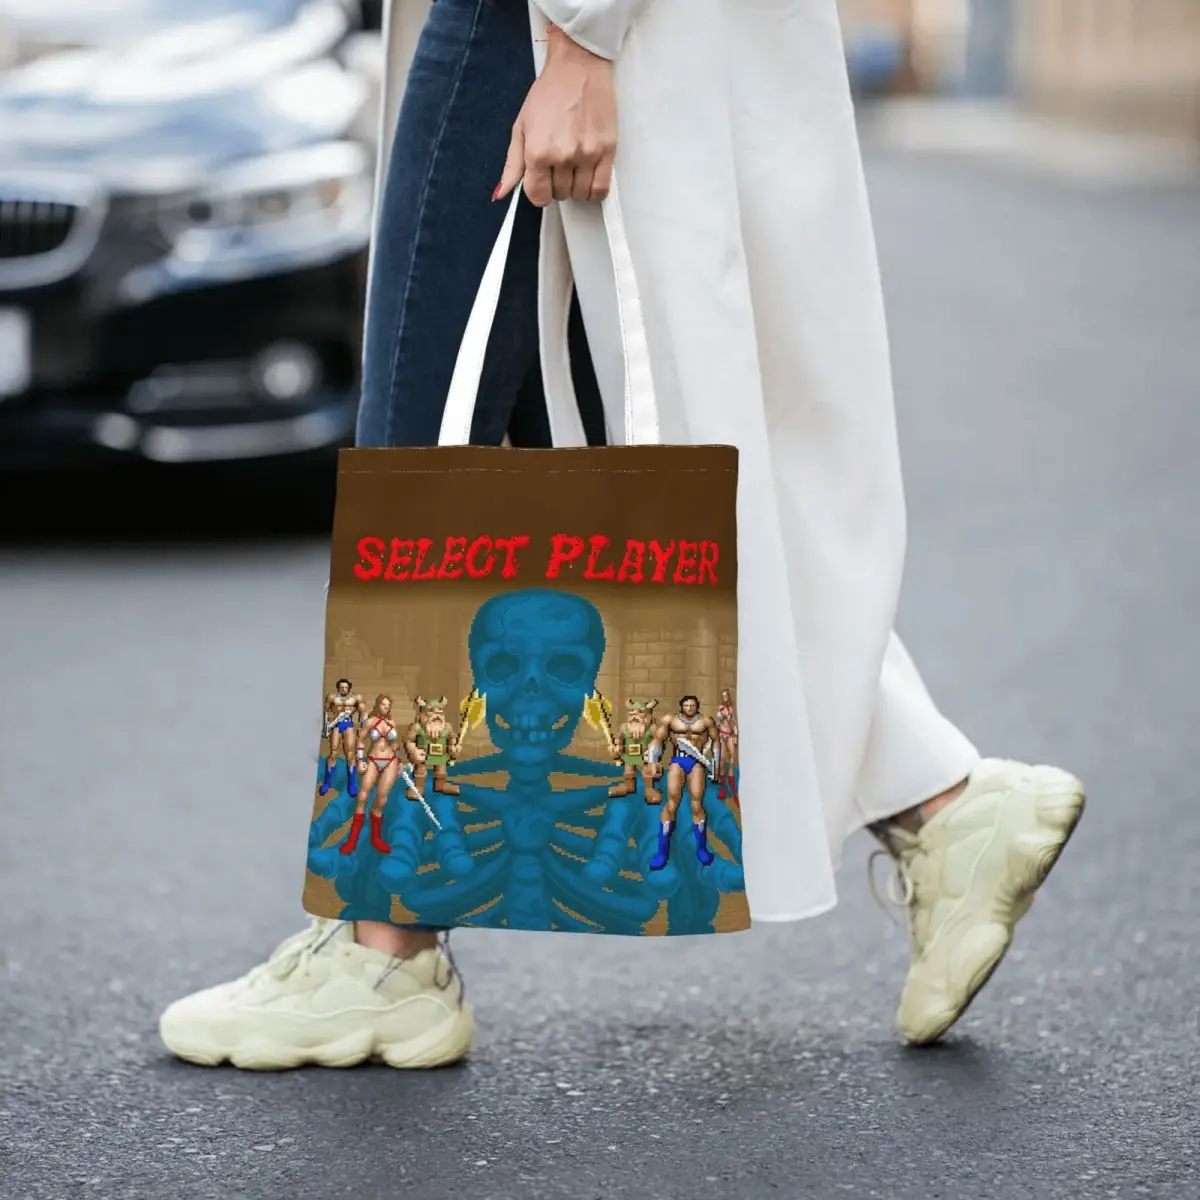 Golden Axe - Select Player Totes Canvas Handbag Women Canvas Shopping Bag